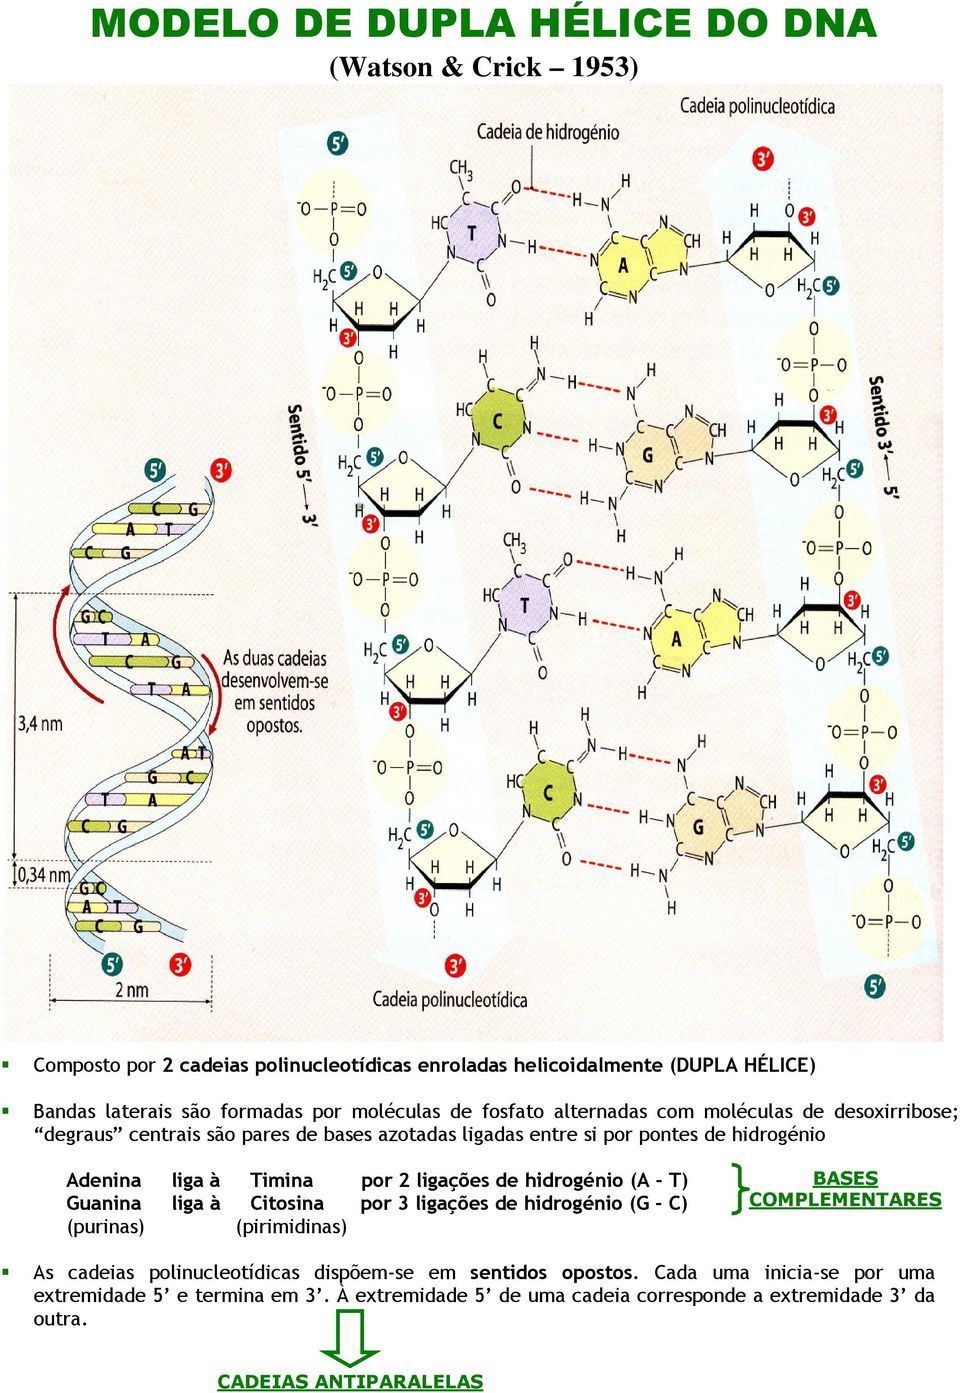 por 2 ligações de hidrogénio (A - T) Guanina liga à Citosina por 3 ligações de hidrogénio (G - C) (purinas) (pirimidinas) BASES COMPLEMENTARES As cadeias polinucleotídicas